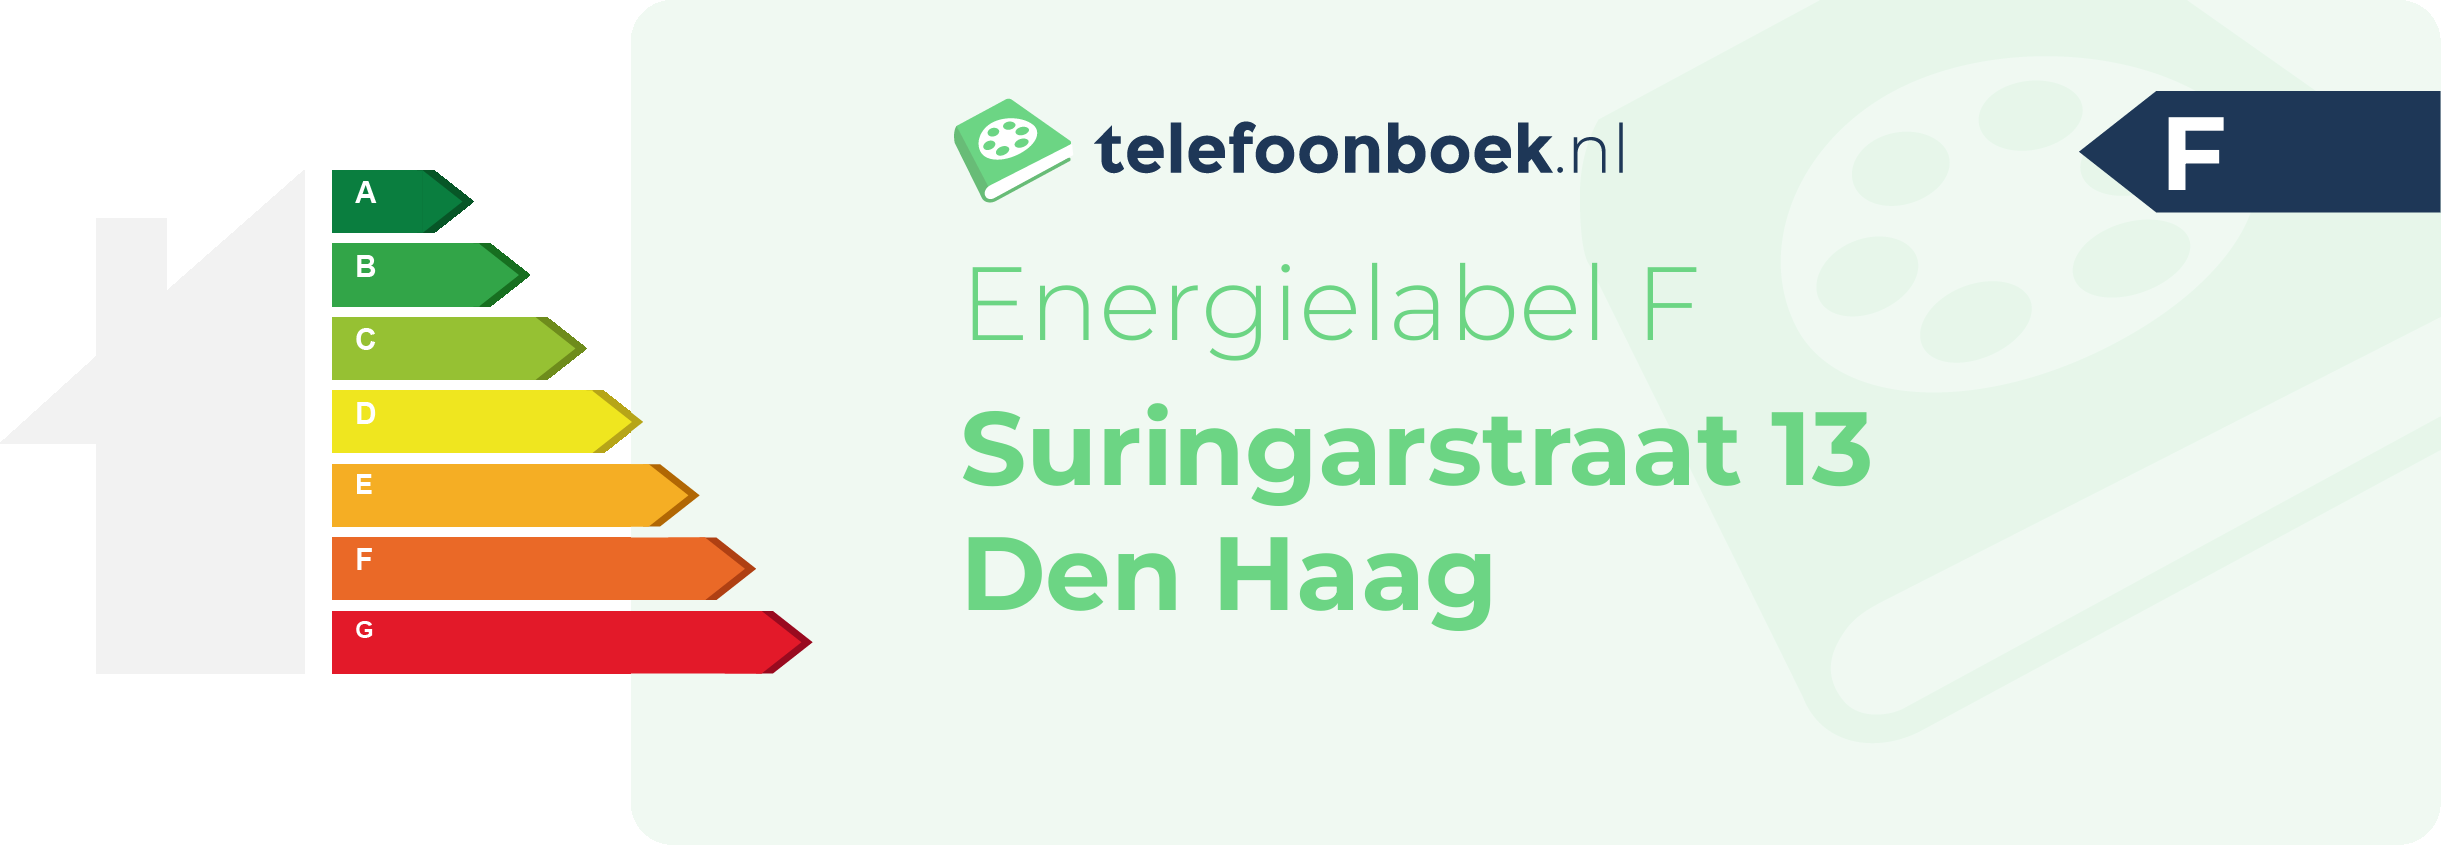 Energielabel Suringarstraat 13 Den Haag